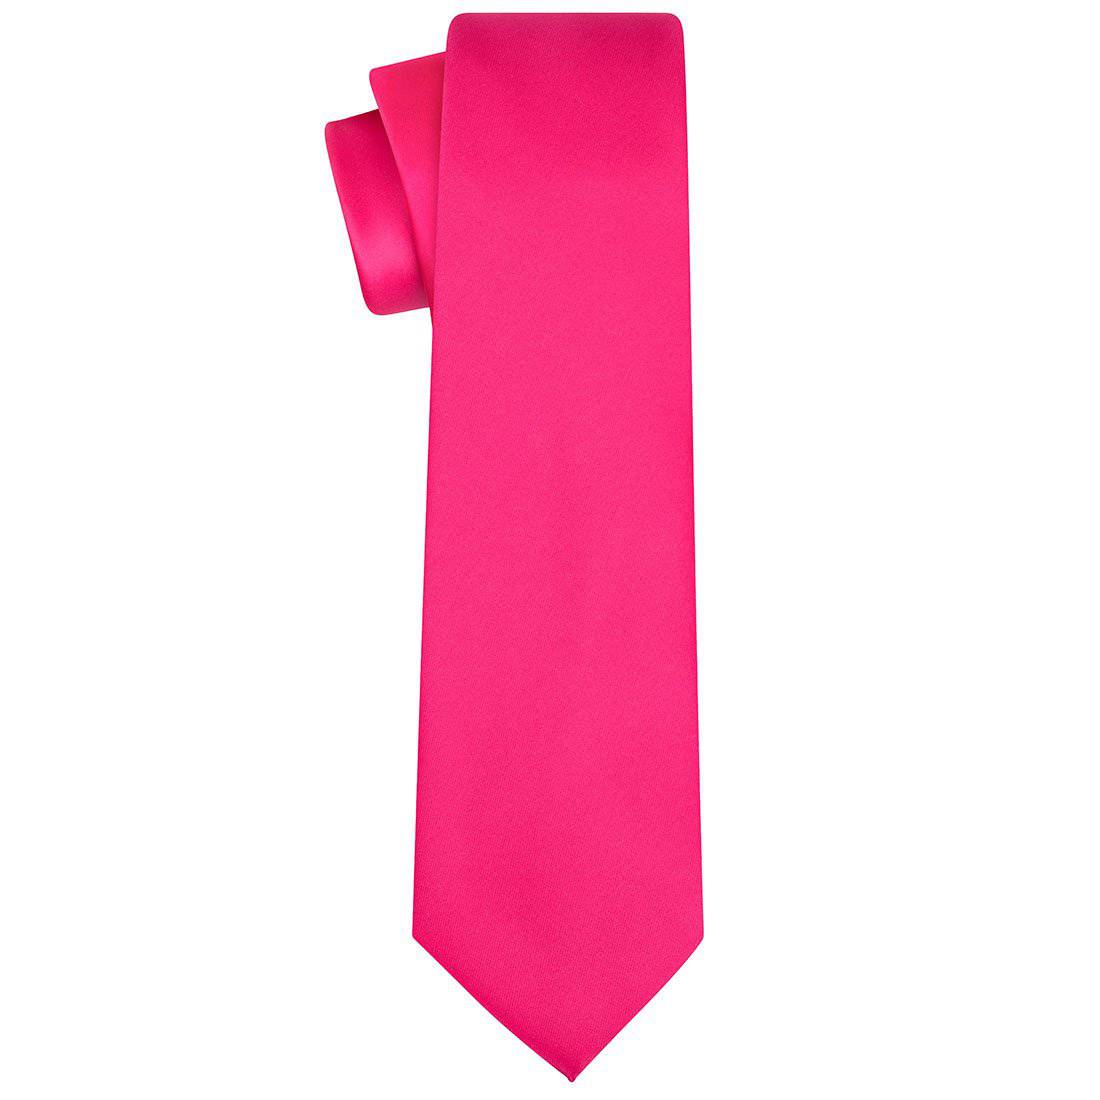 Hot Pink Satin Tie - Tie, bowtie, pocket square  | Kissties